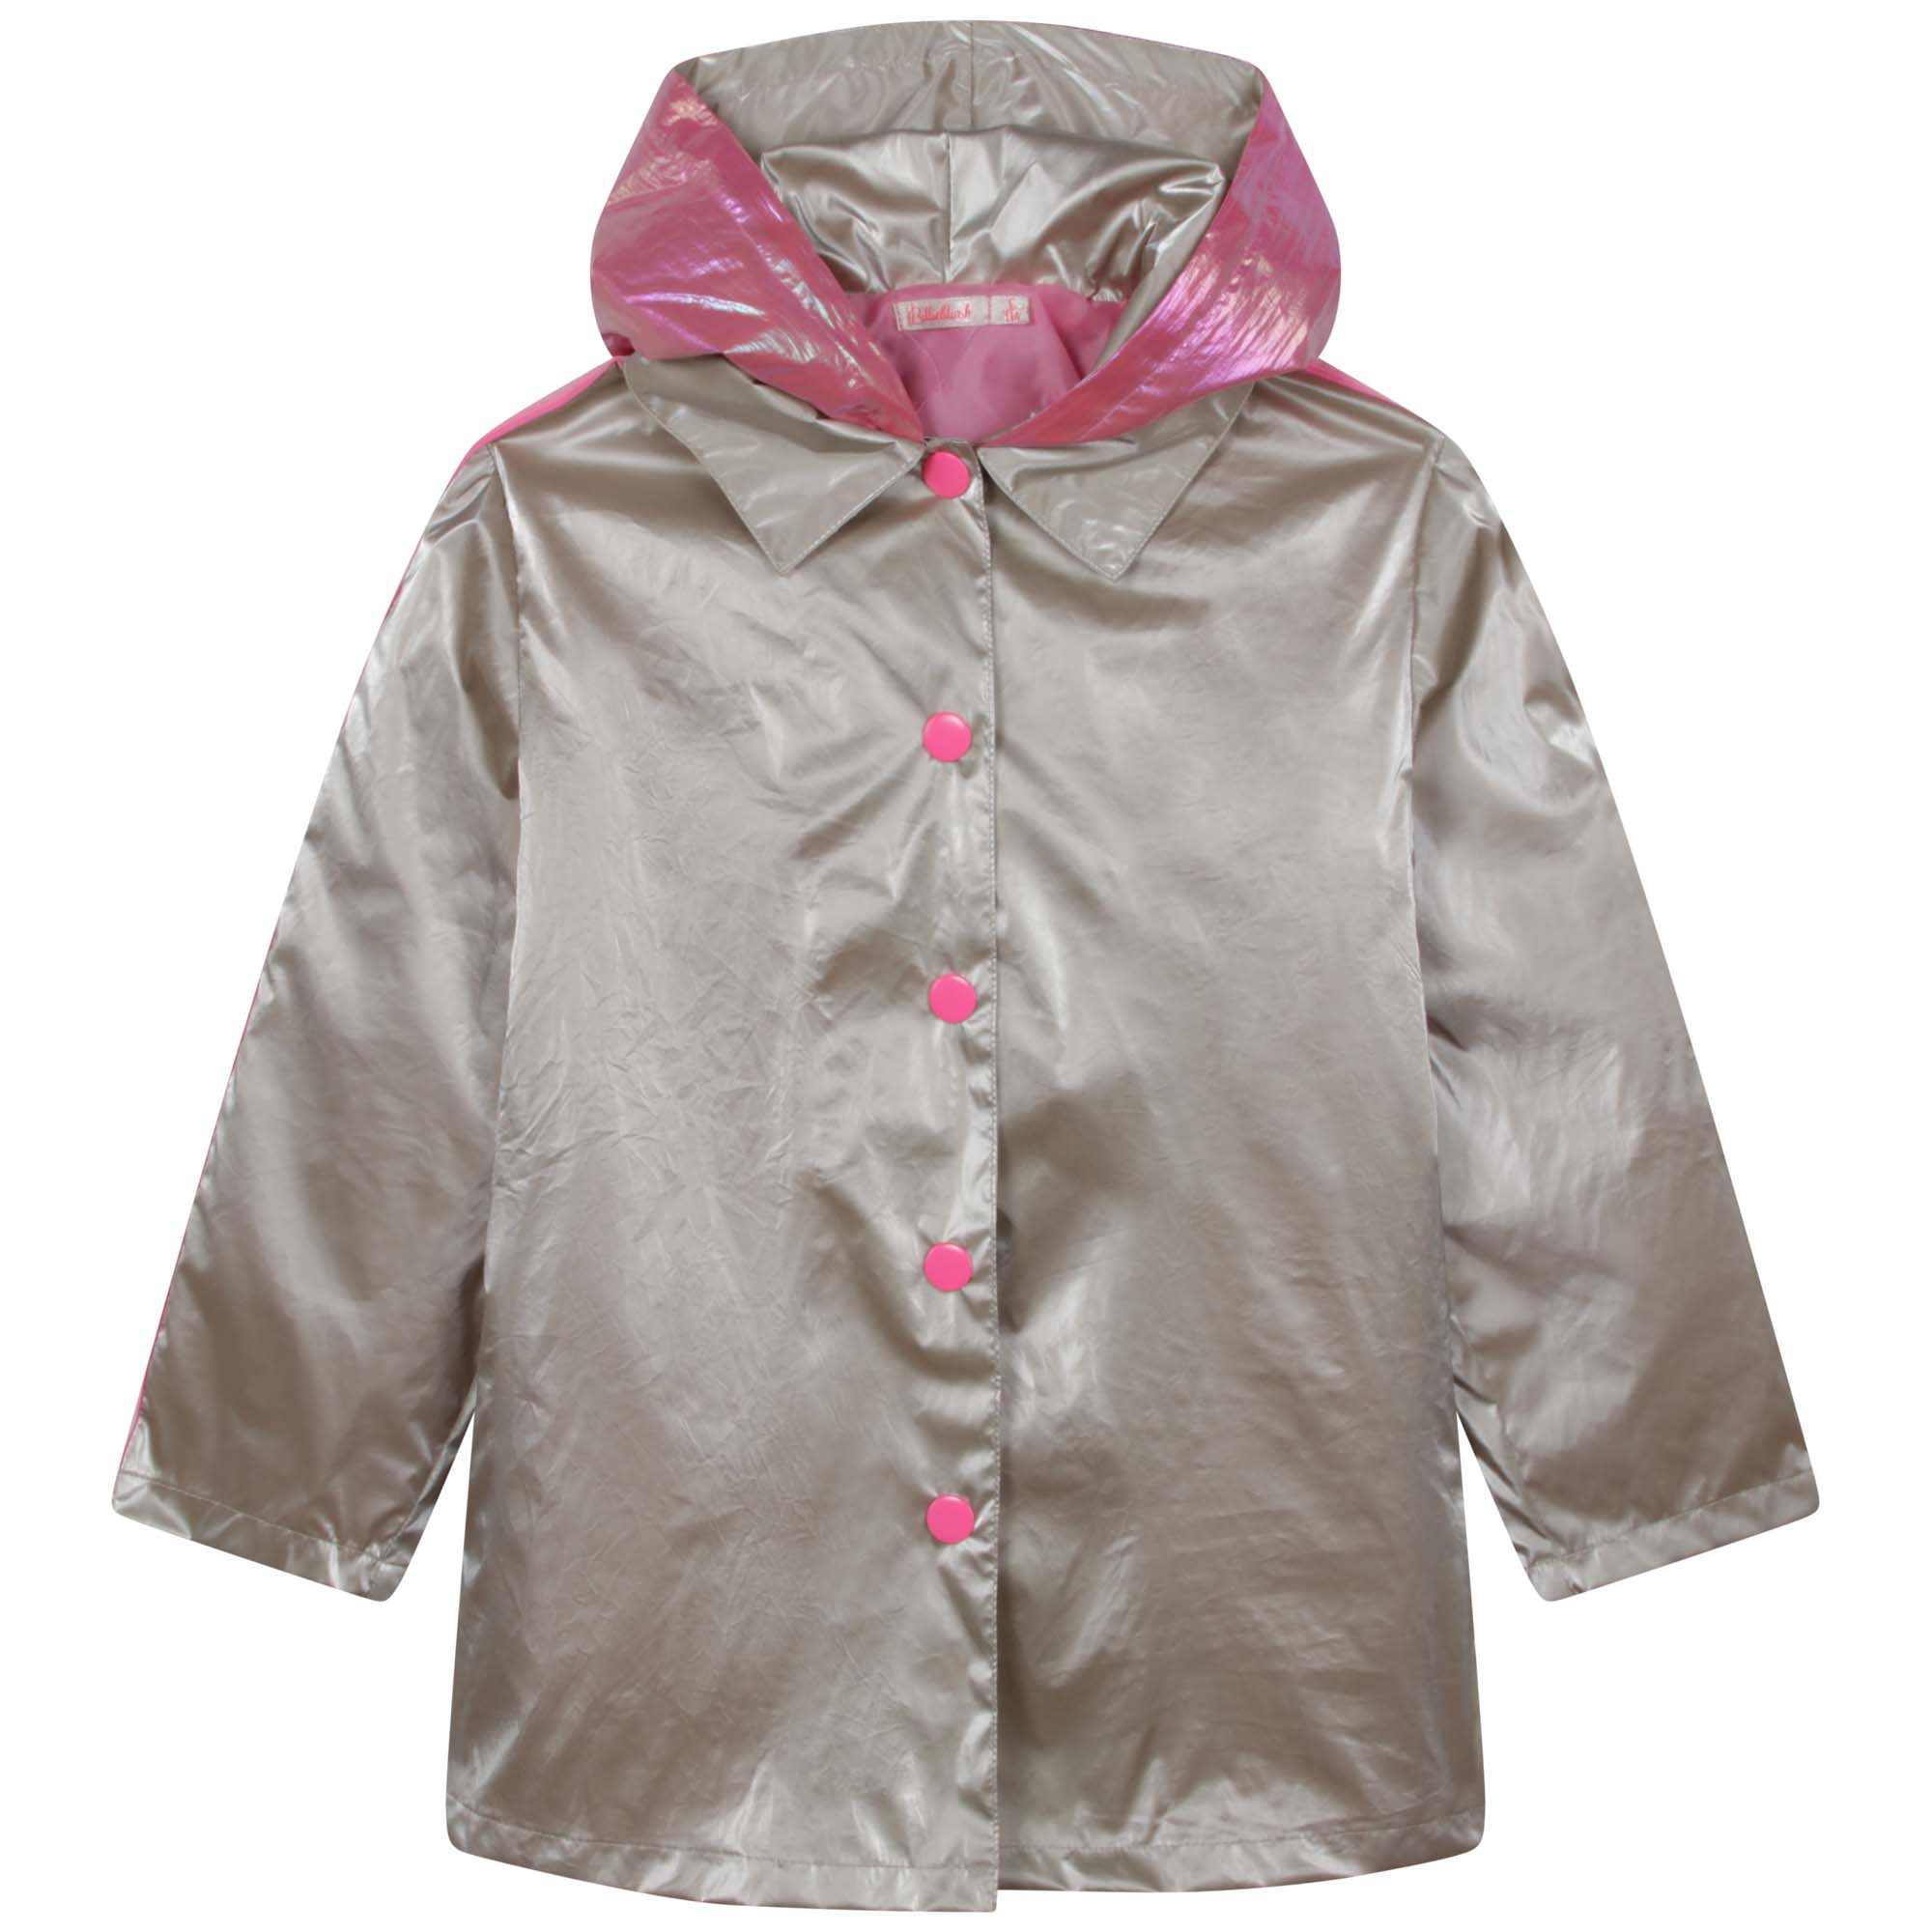 Hooded trench coat BILLIEBLUSH for GIRL